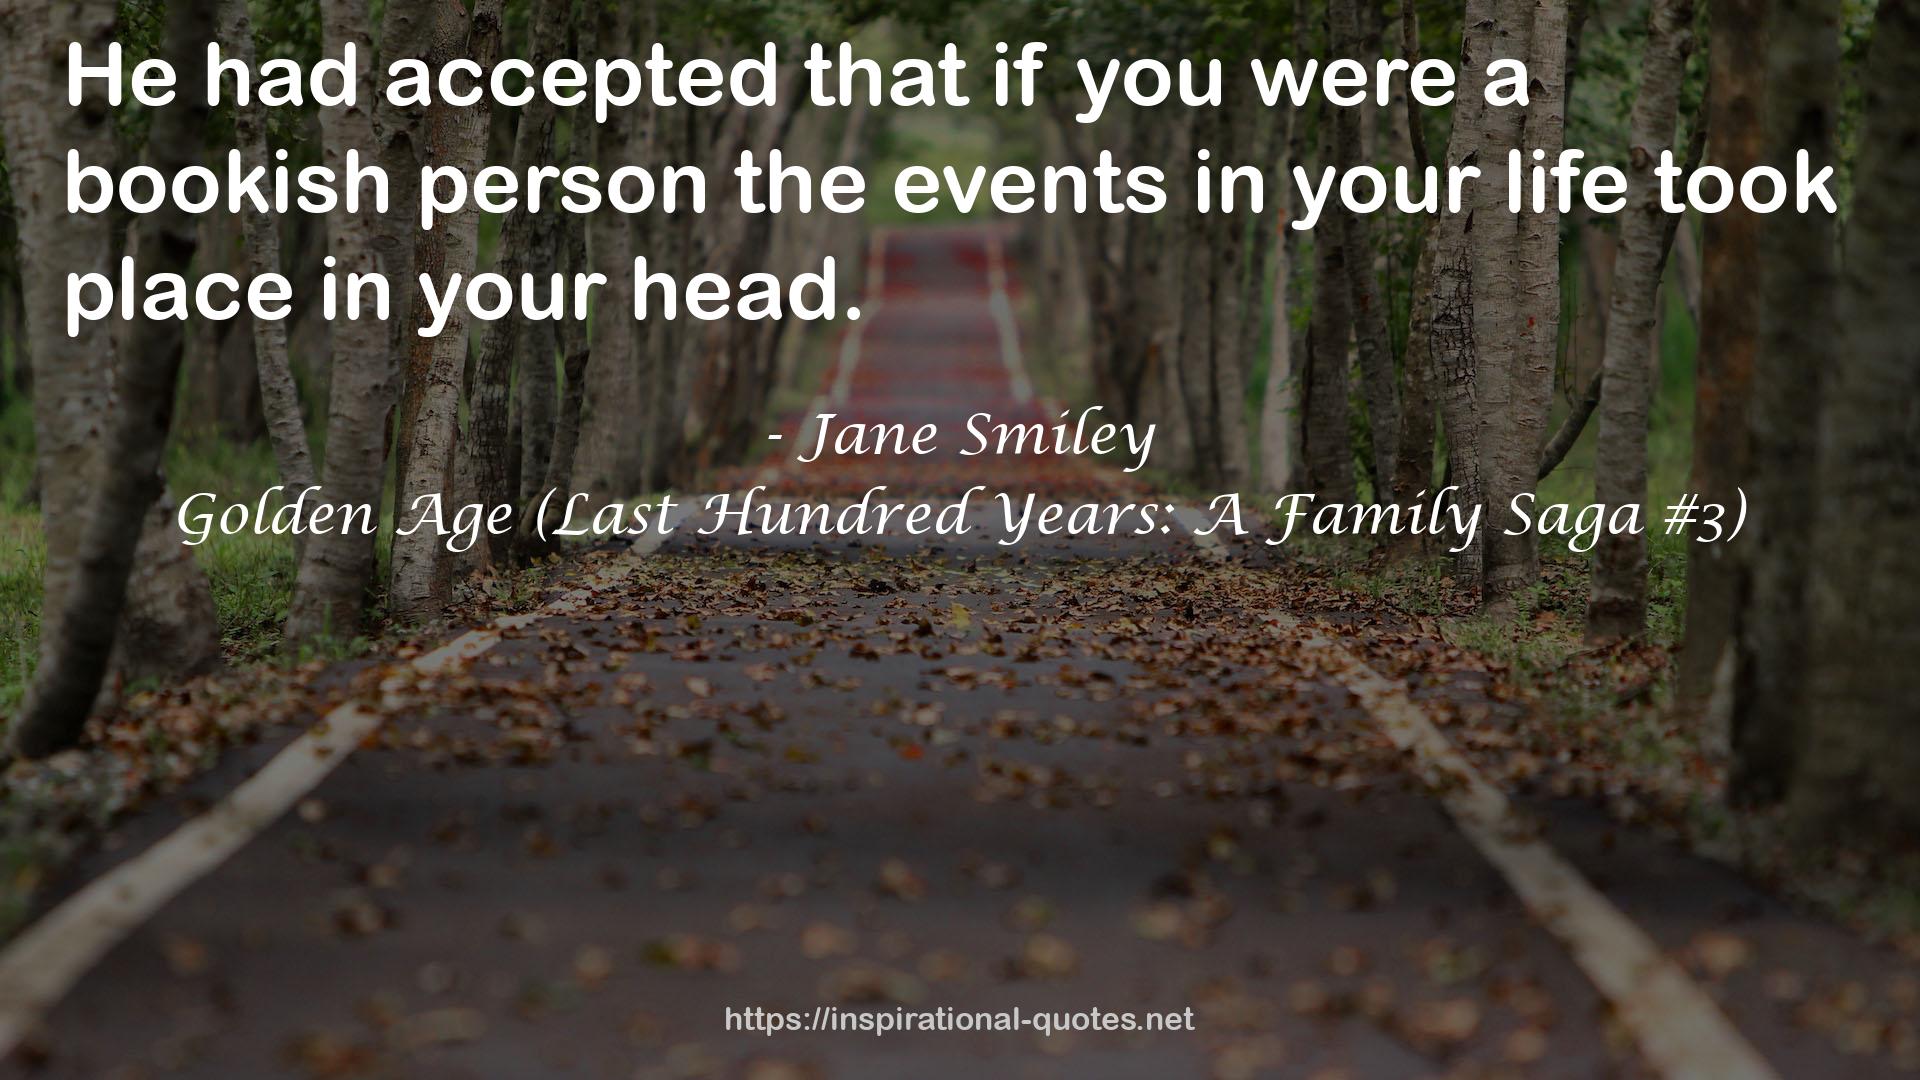 Jane Smiley QUOTES